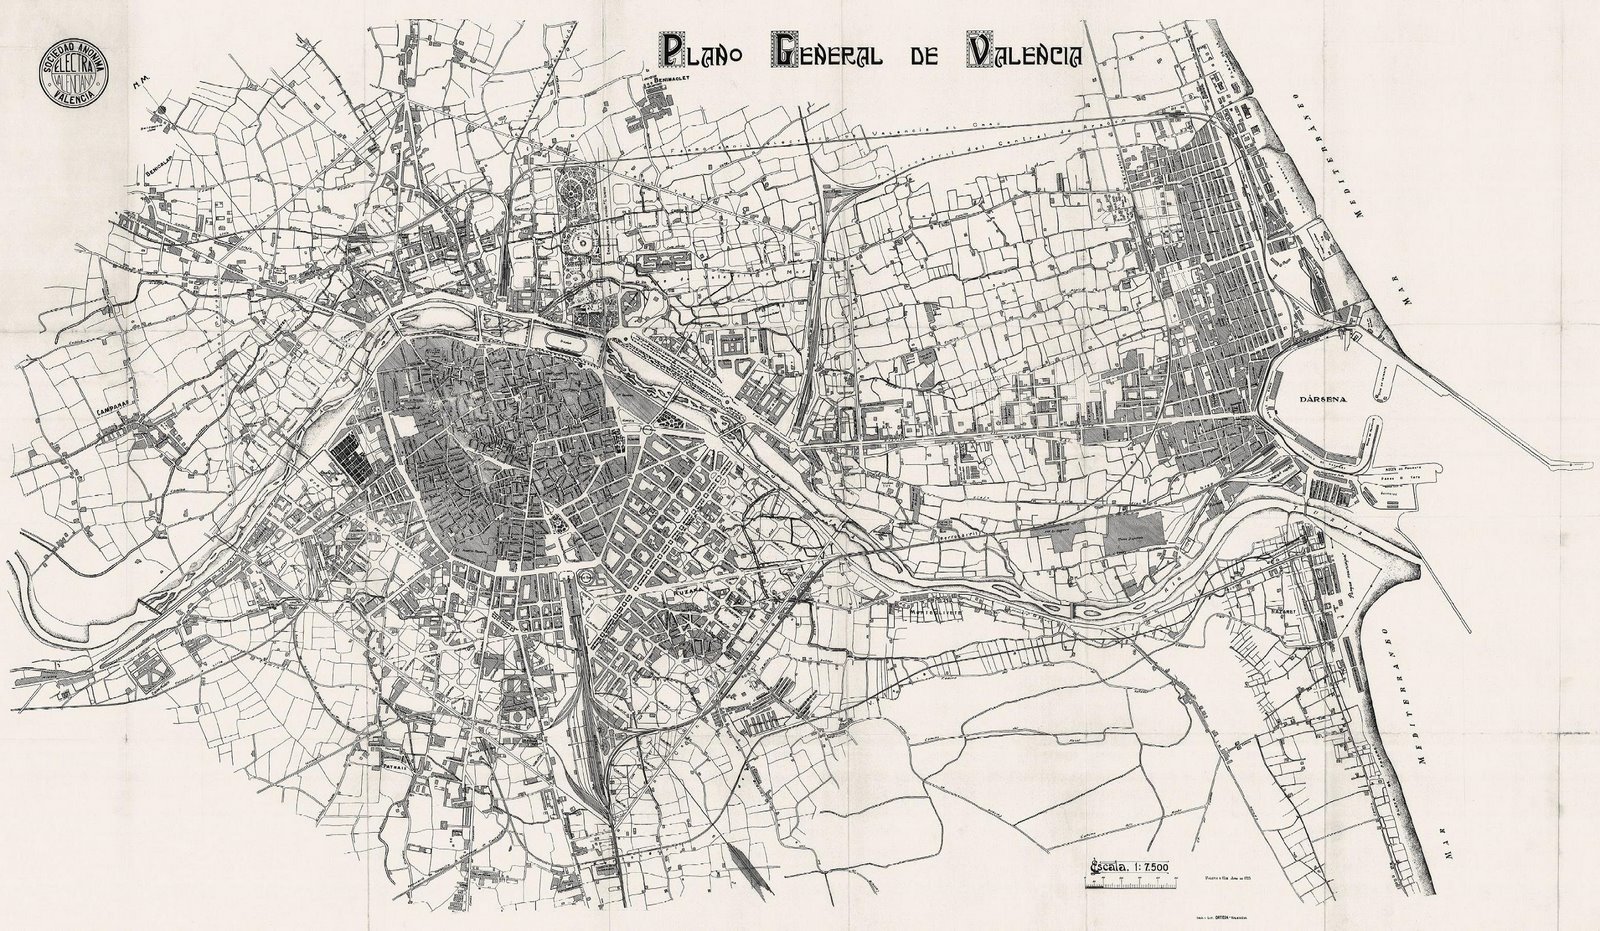 Plano general de Valencia 1925